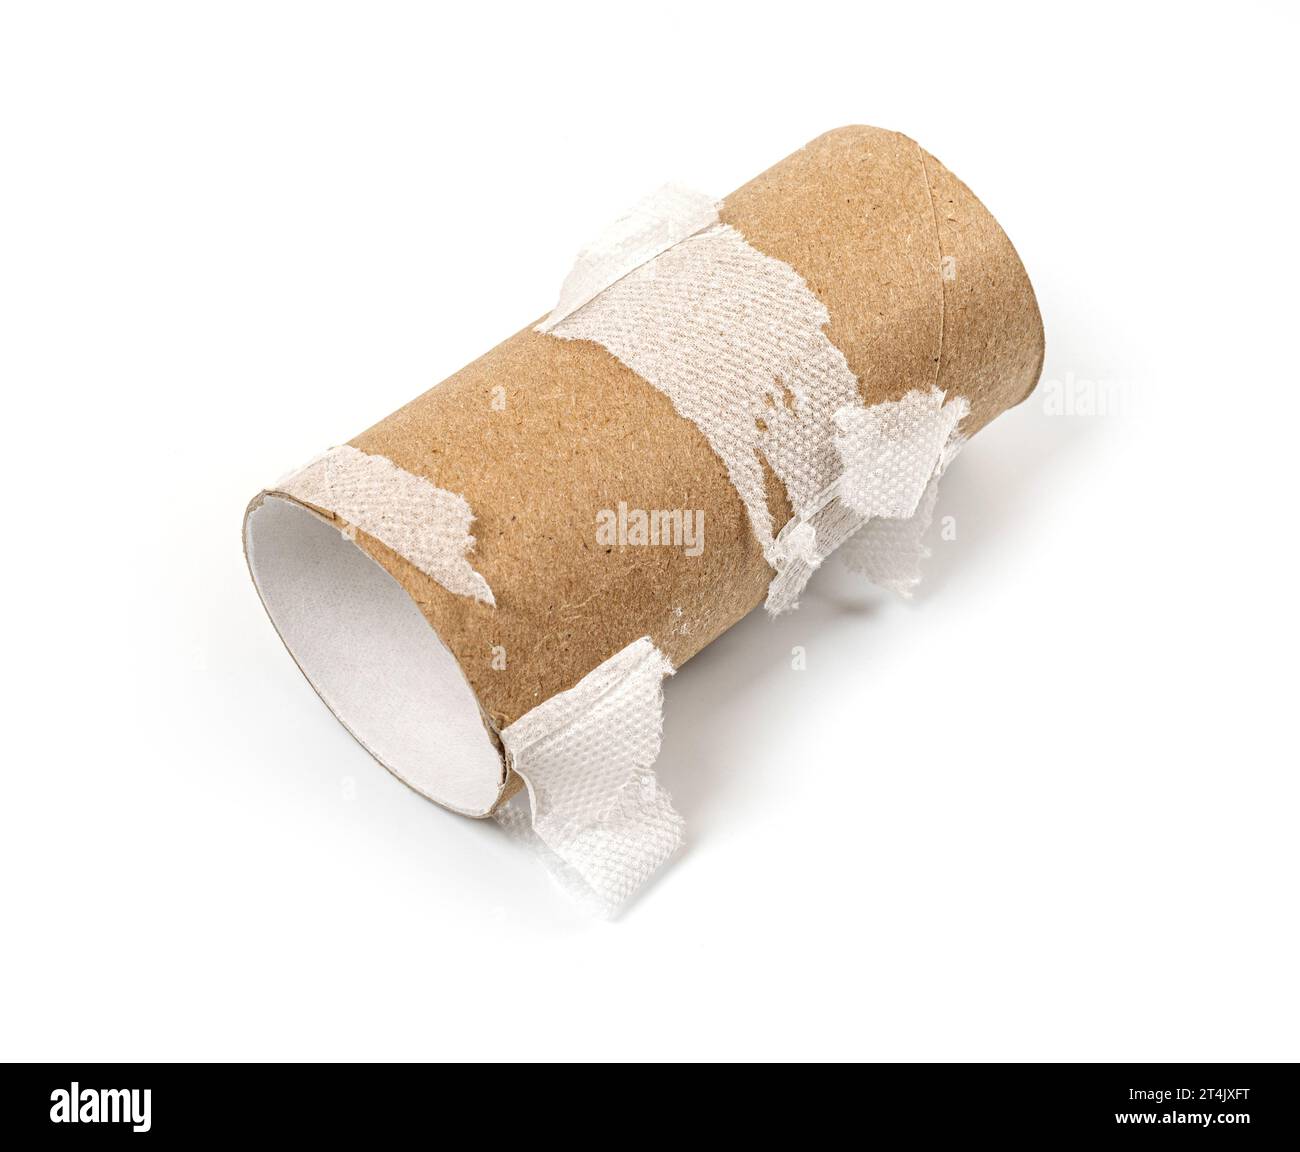 Rotolo di carta igienica vuoto su sfondo bianco Foto Stock